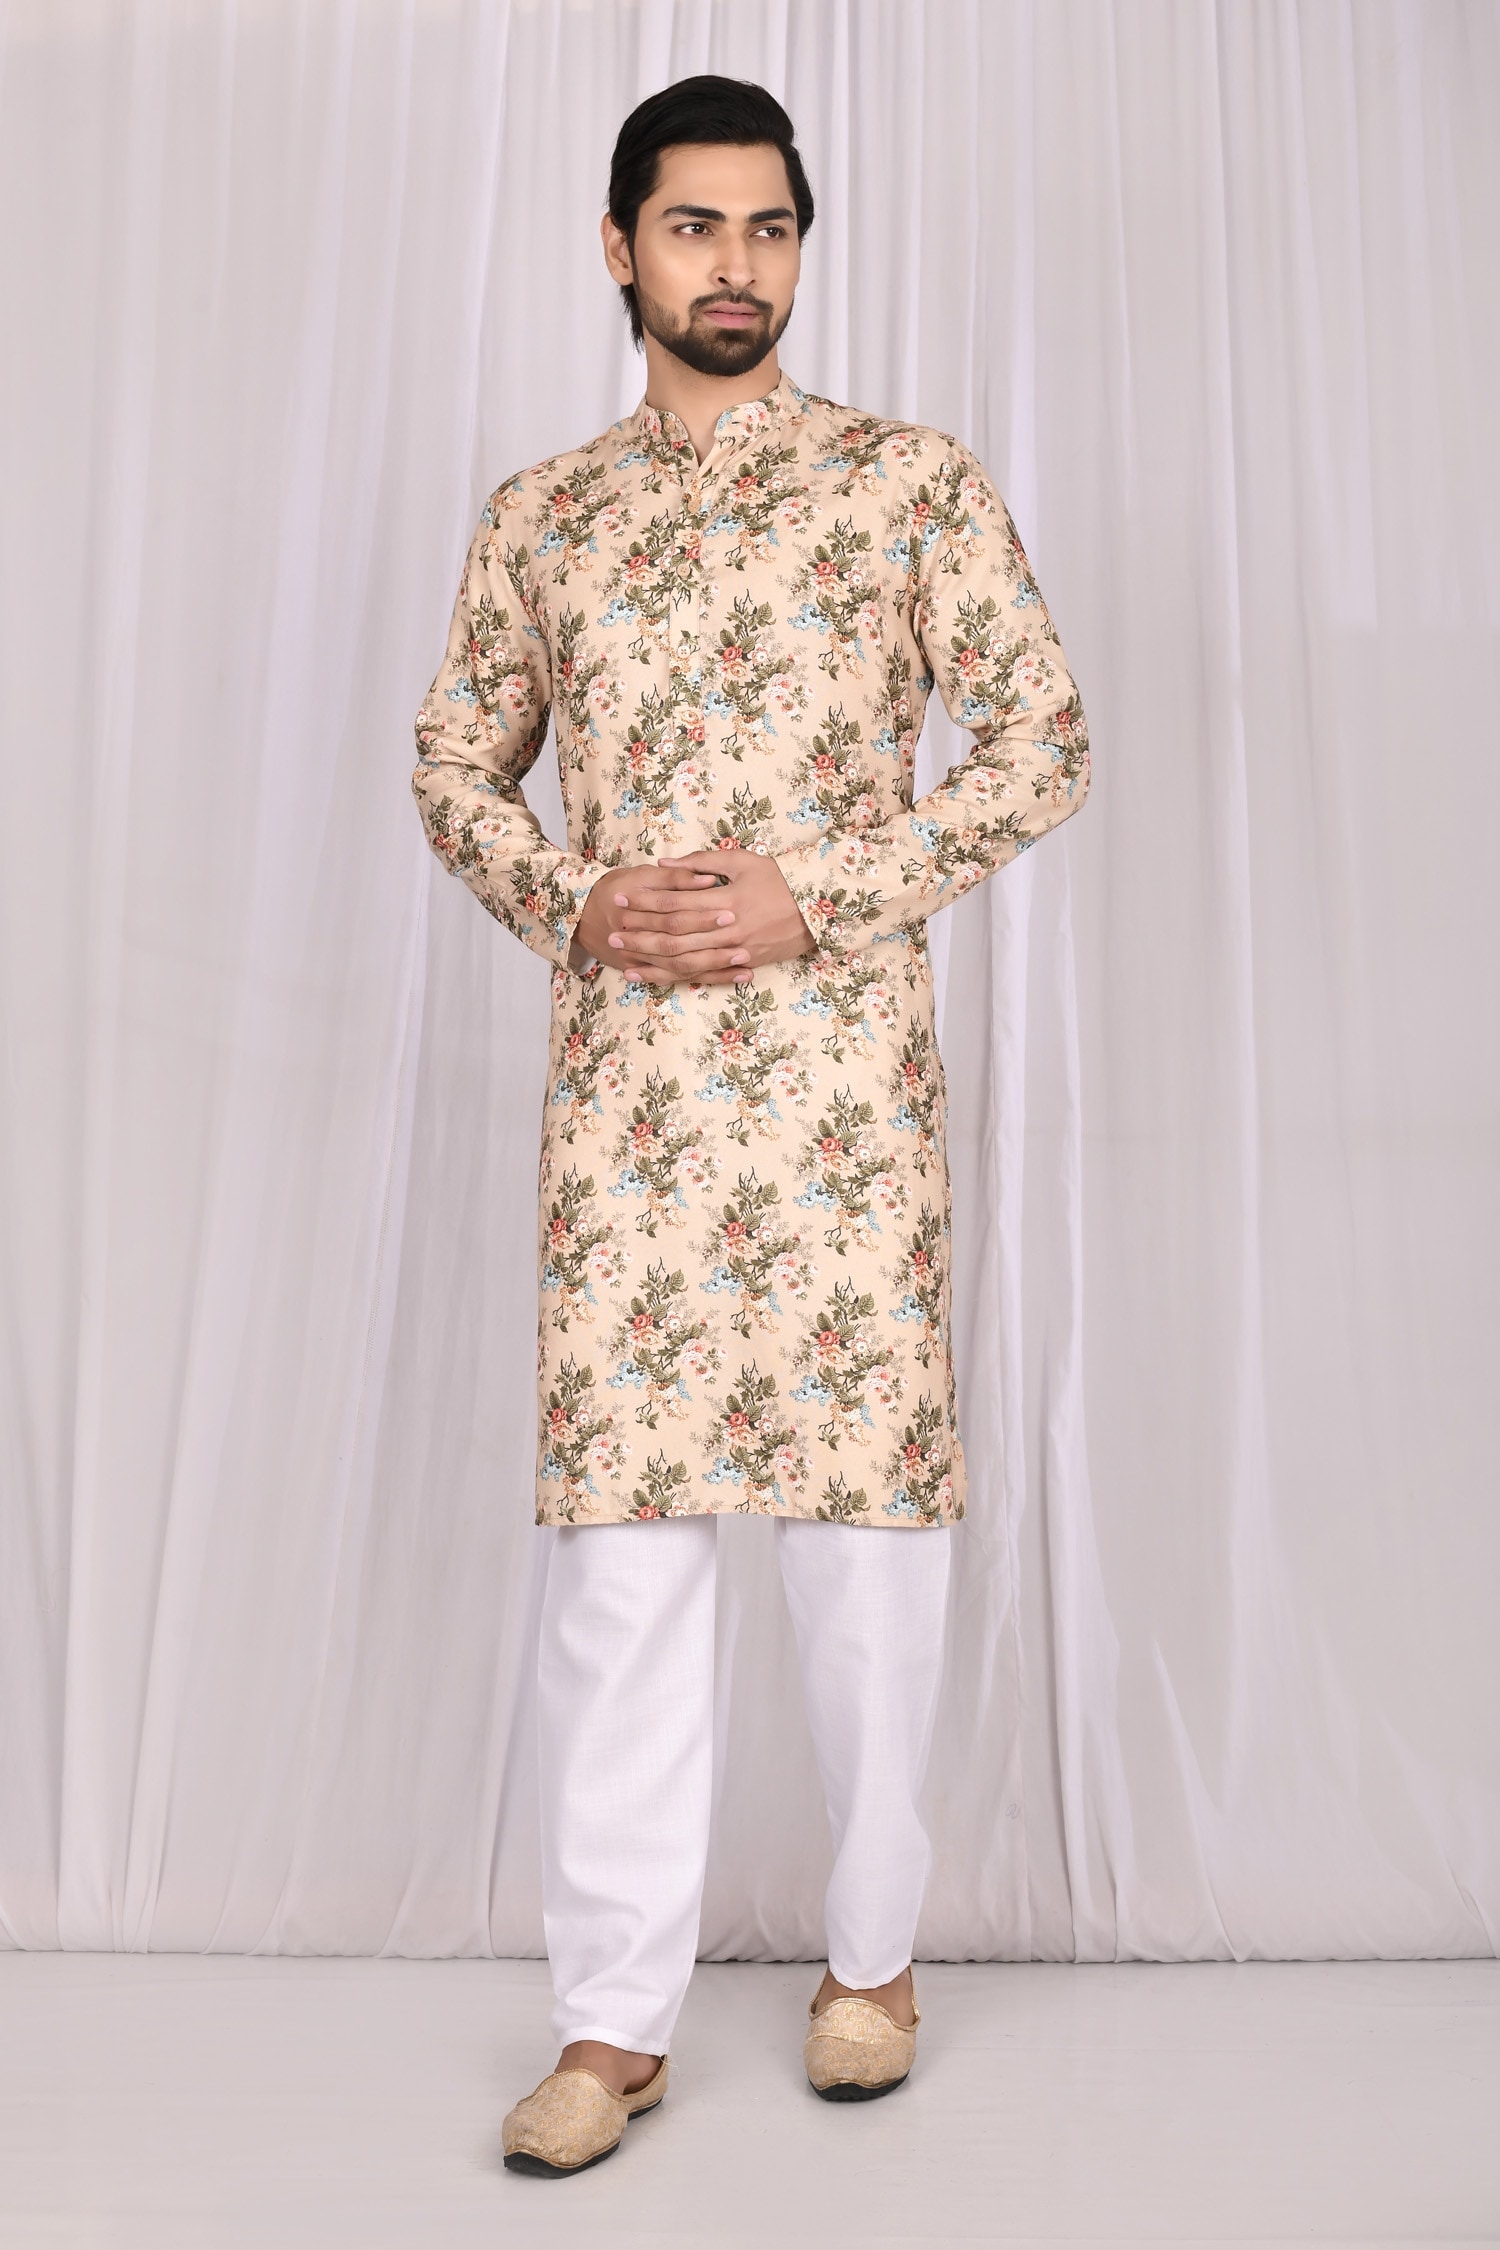 Samyukta Singhania Multi Color Cotton Printed Floral Motifs Kurta And Pant Set For Men